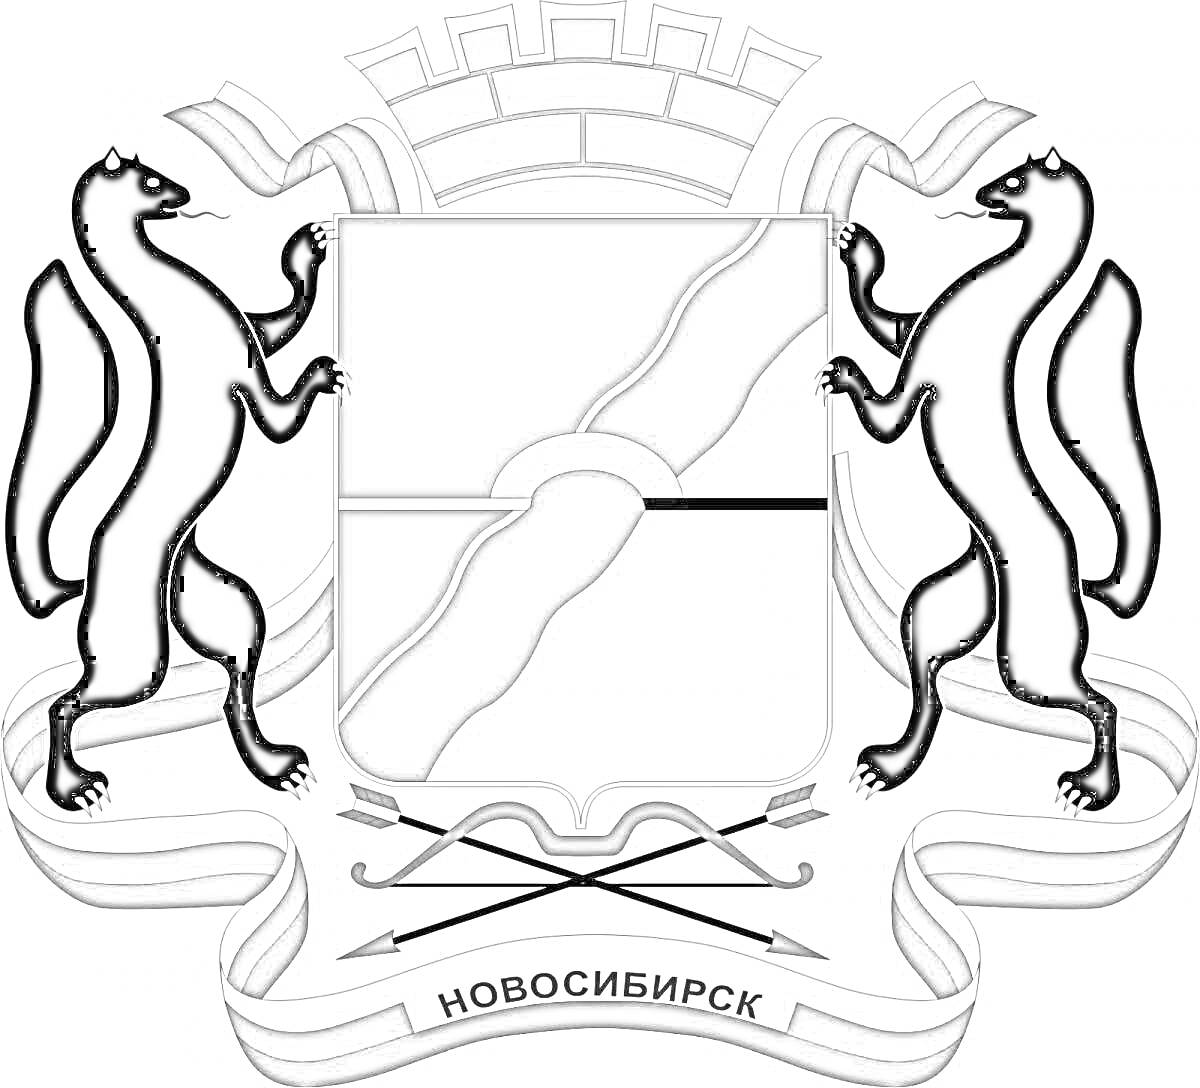 Герб Новосибирска с двумя соболями и щитом с рекой и мостом